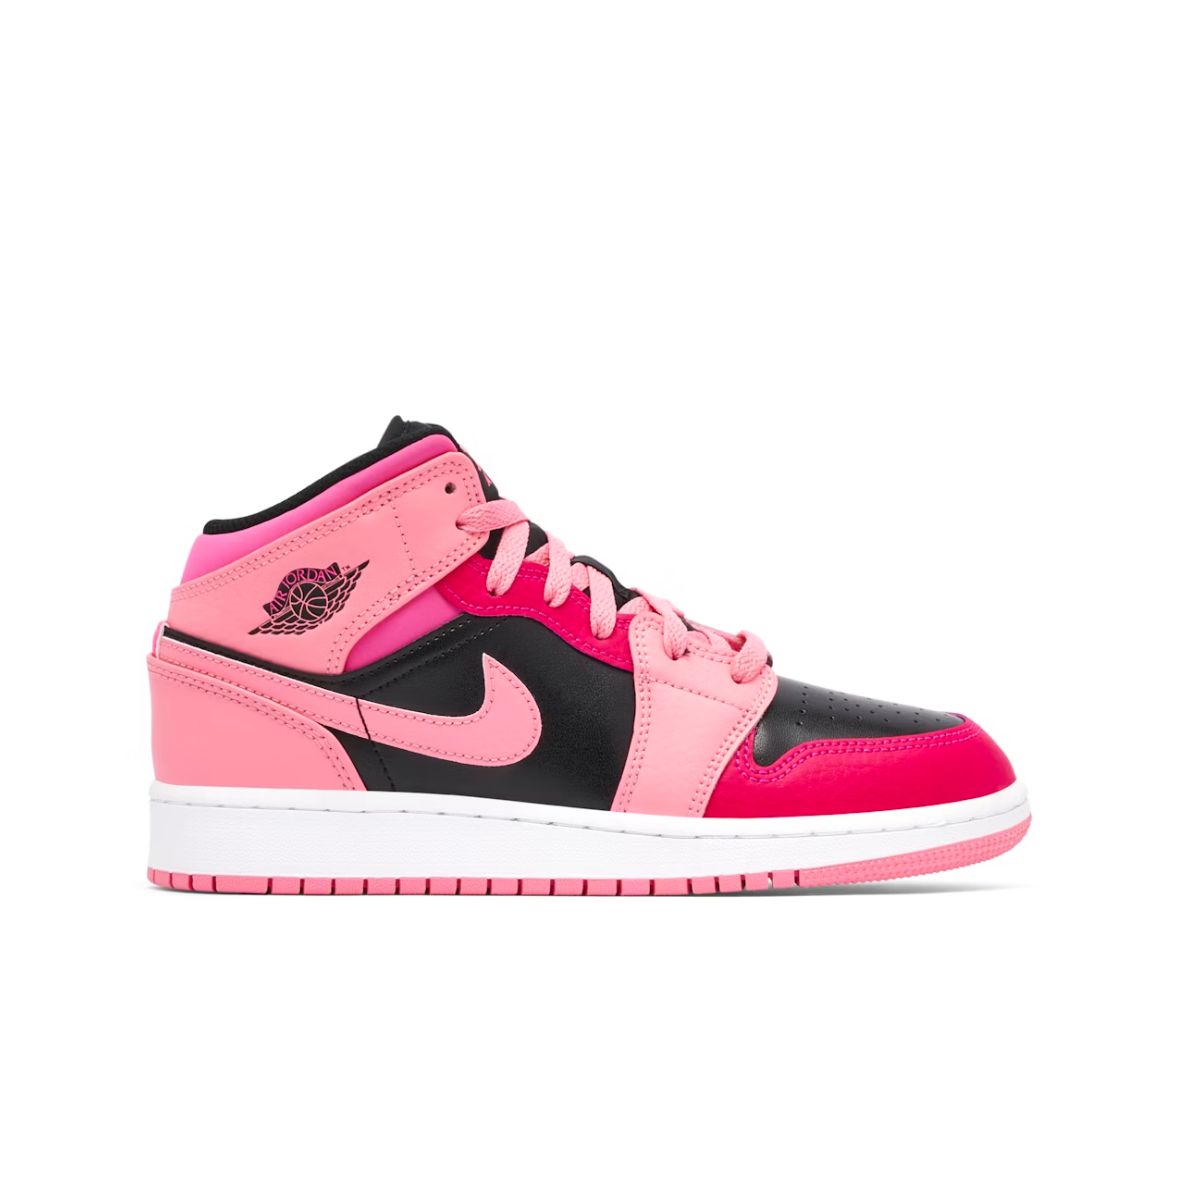 Pink Jordans Replacement Shoelaces - Kicks Shoelaces